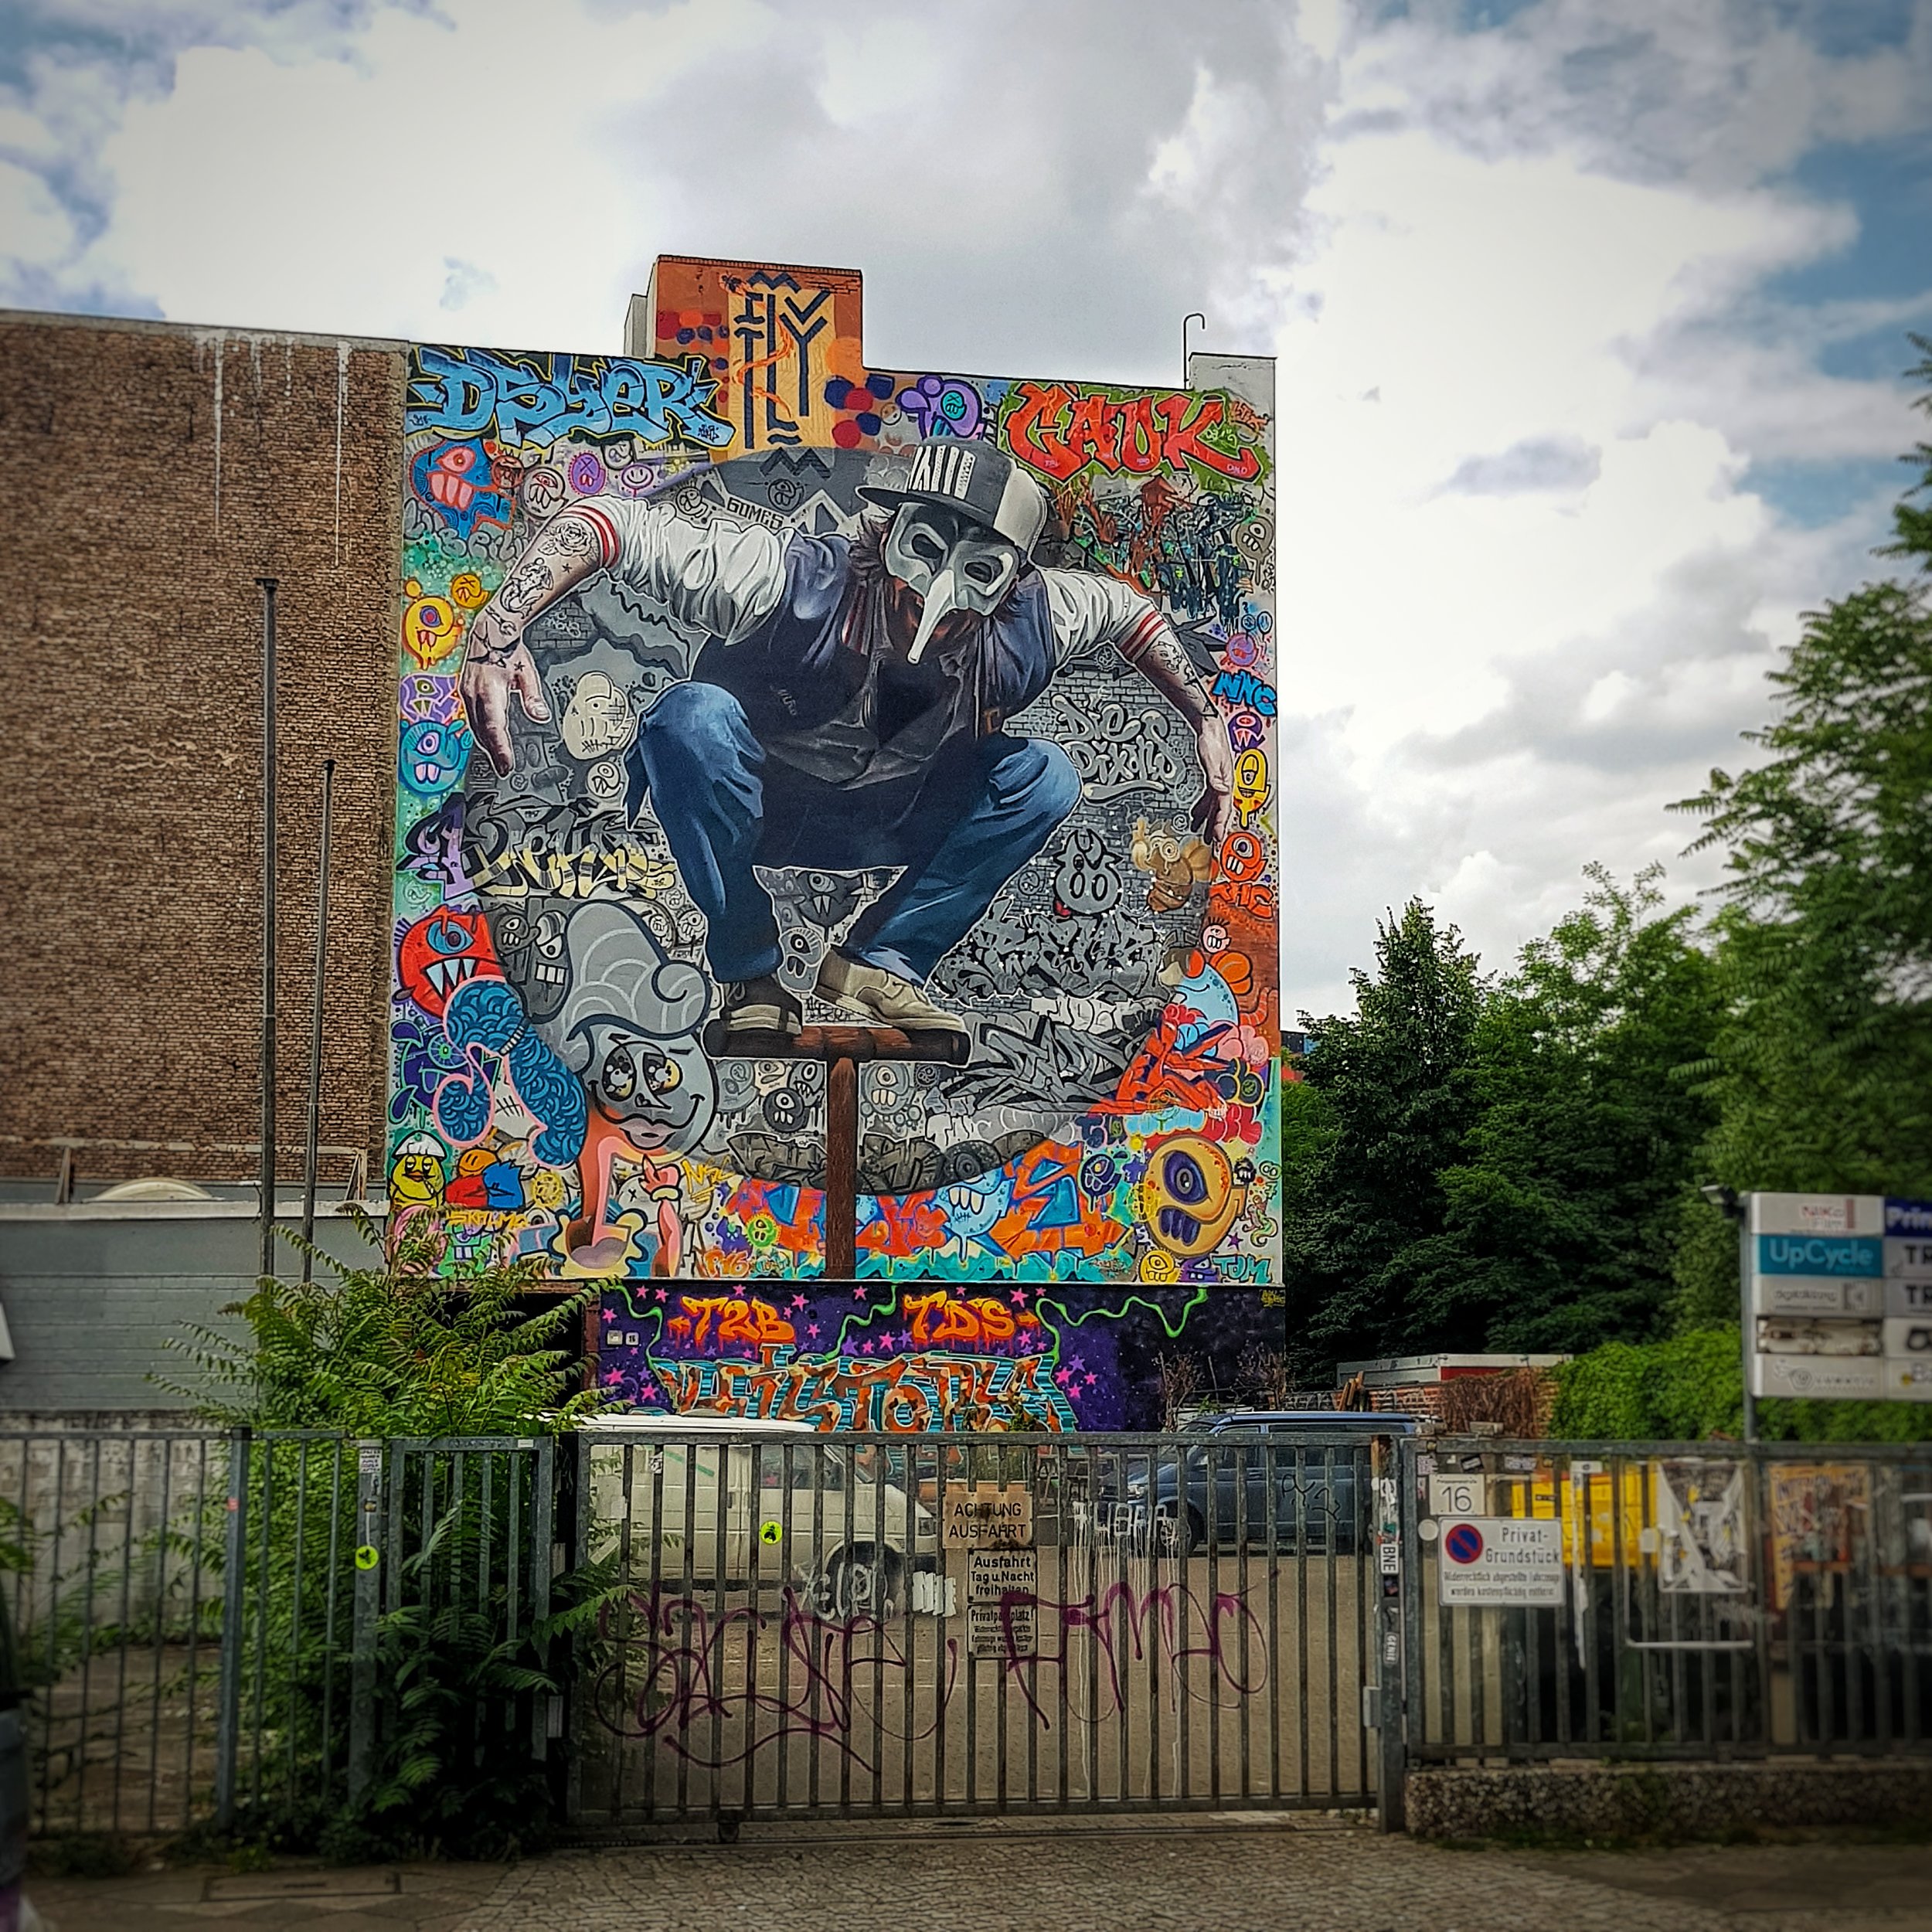 Day 167 - June 16: Graffiti in Kreuzberg